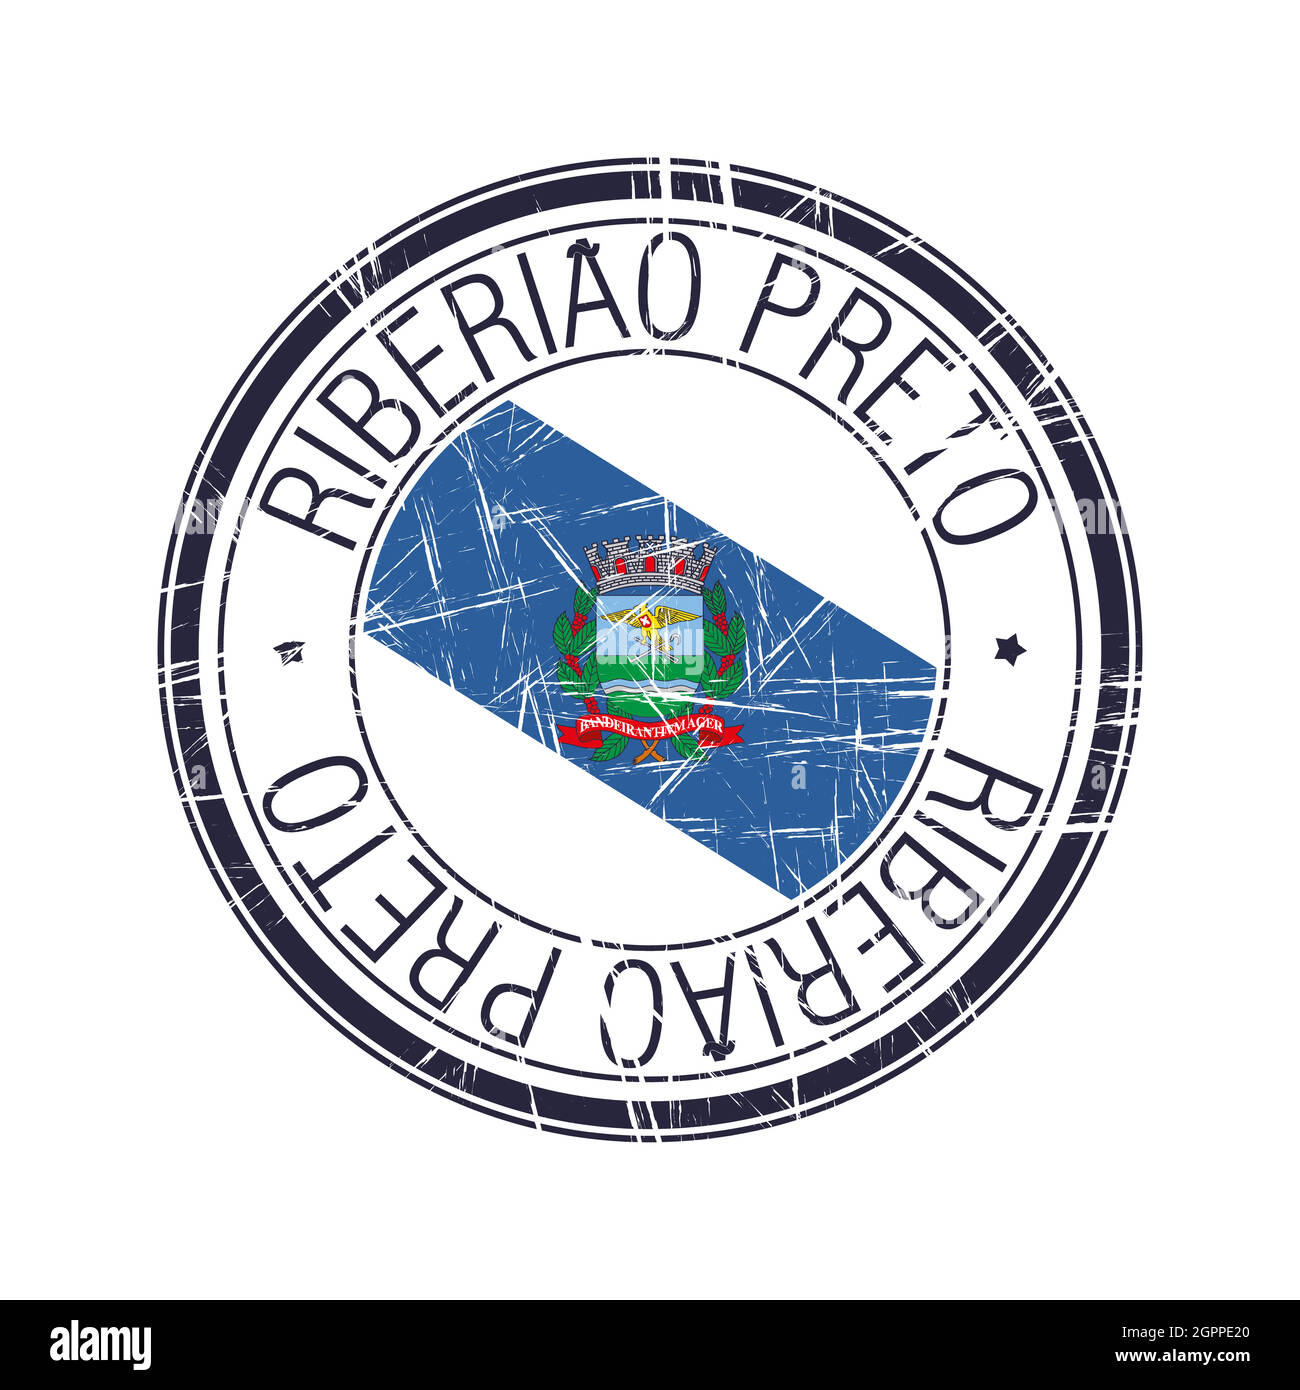 City of Ribeirao Preto, Brazil vector stamp Stock Vector